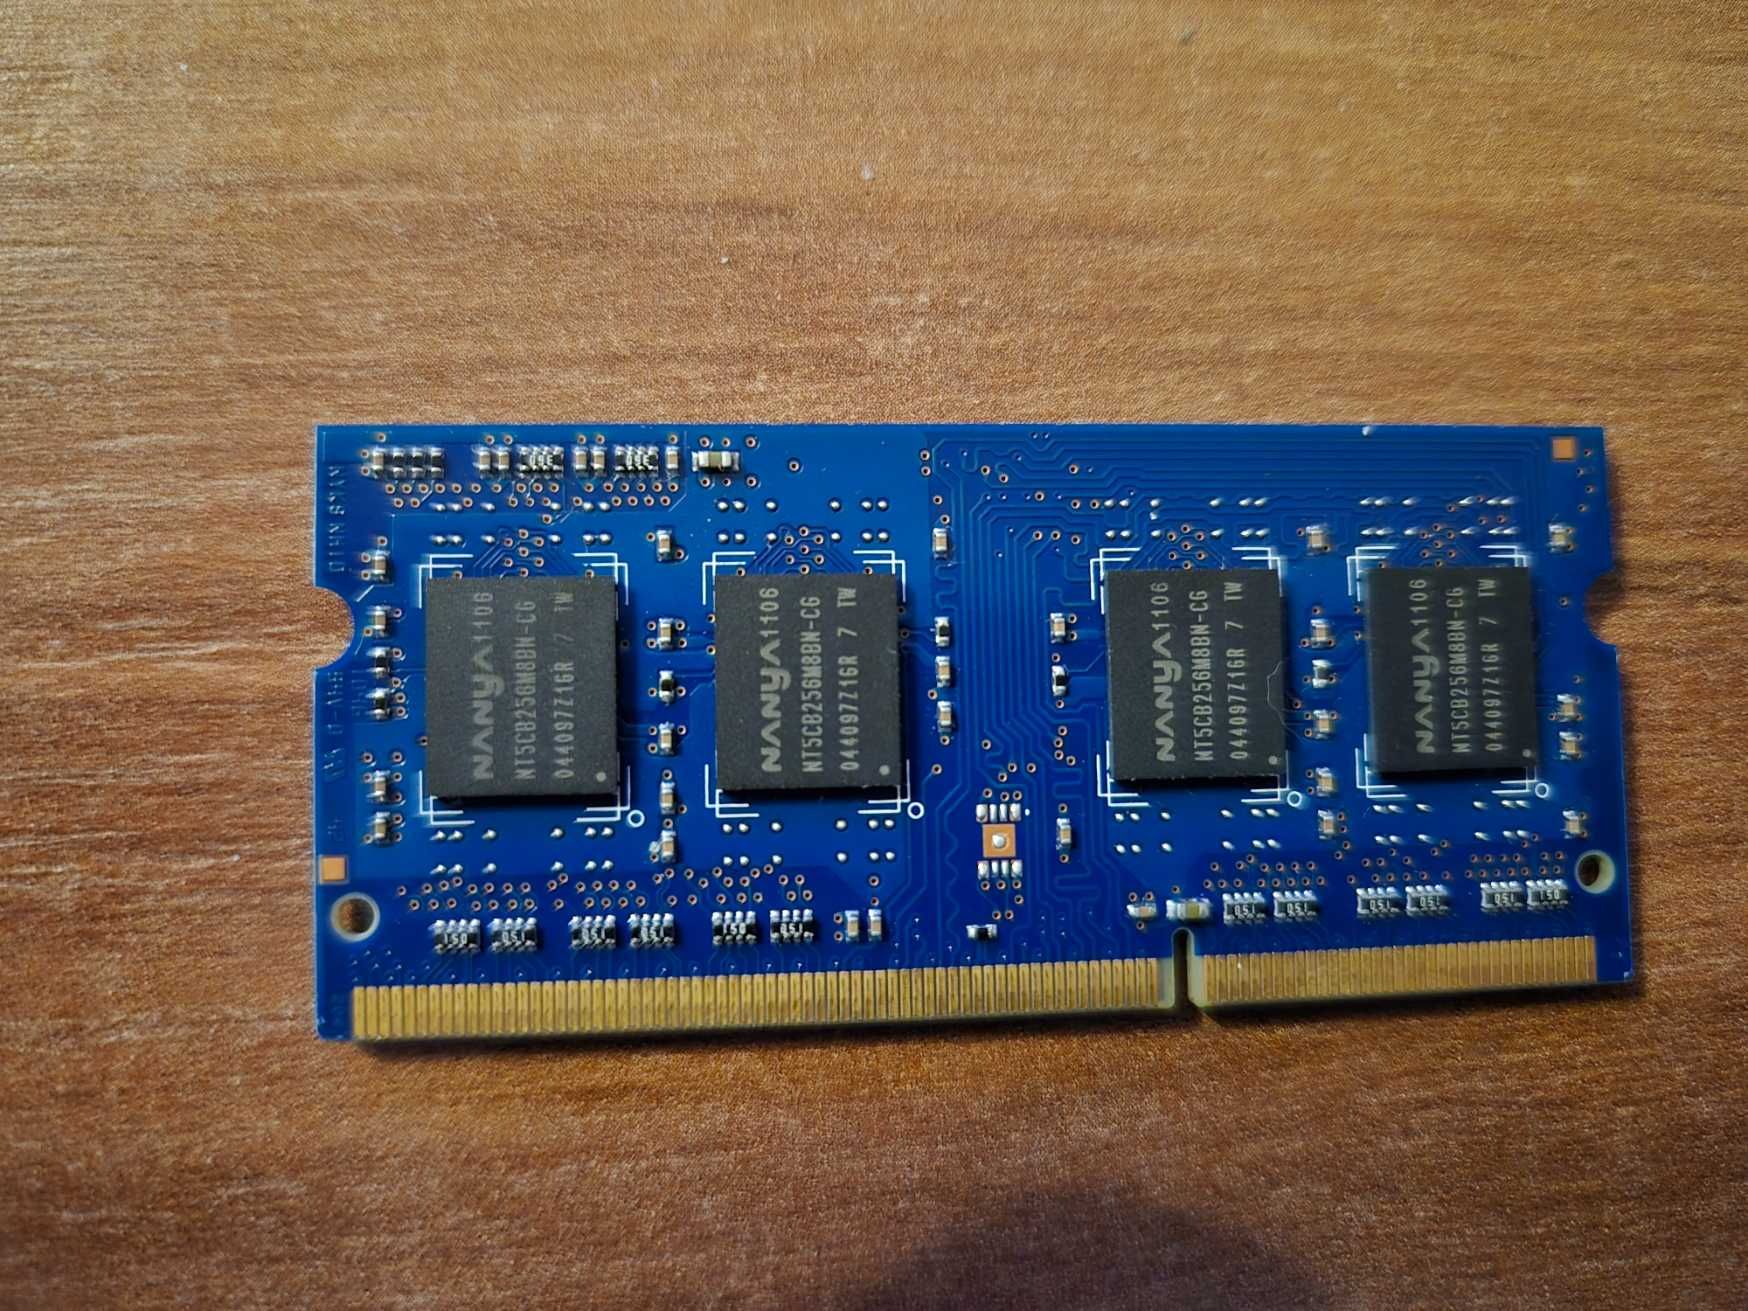 Nanya 4GB 1333 MHz DDR3